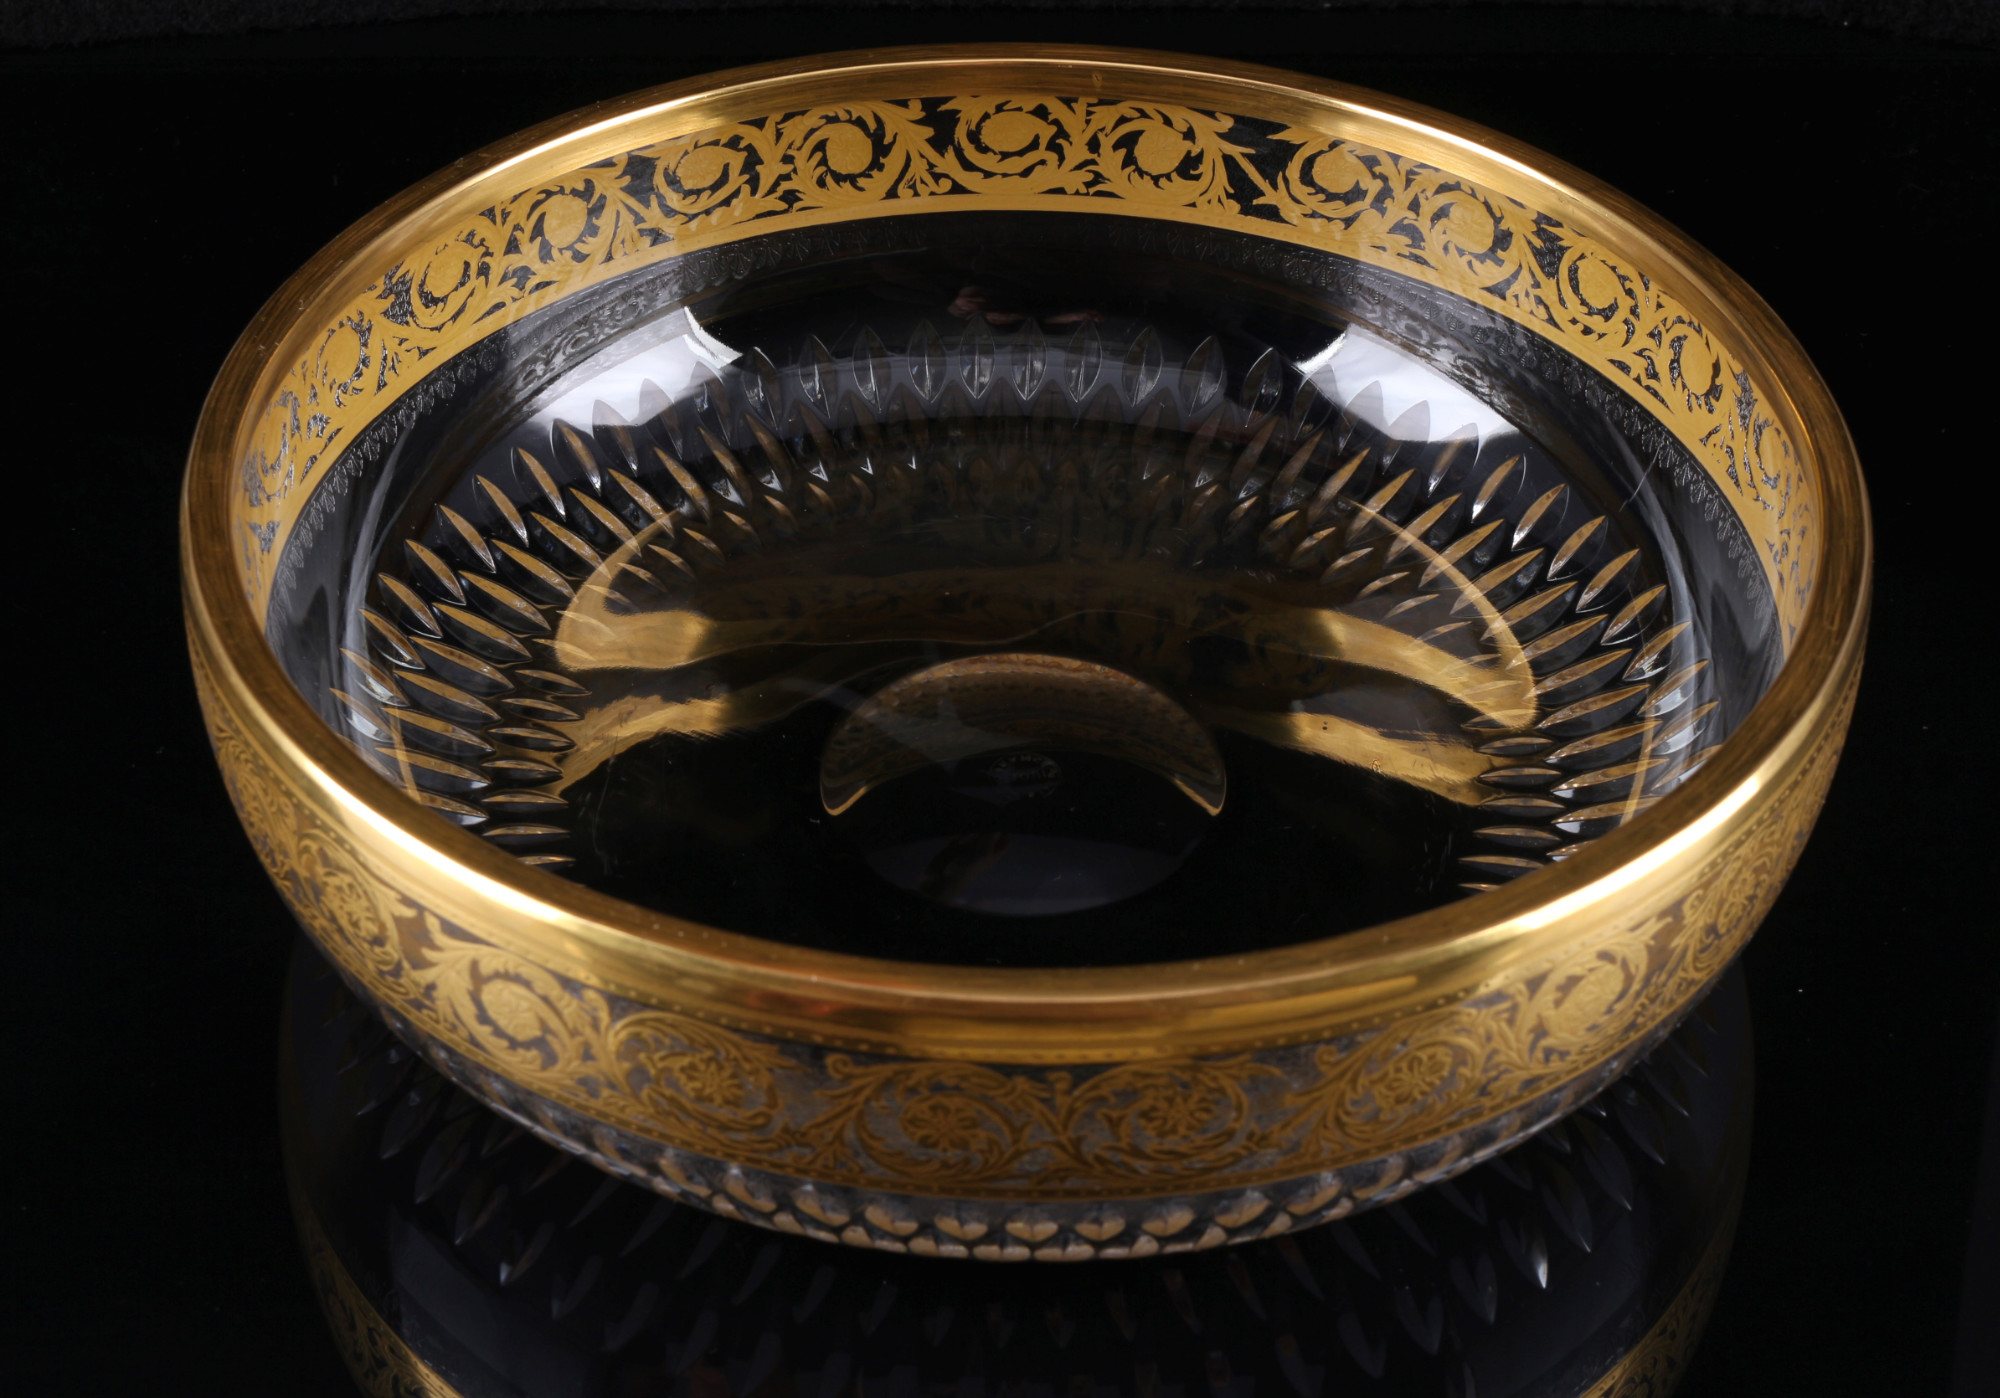 St. Louis Thistle Gold large splendor bowl, große Schale, - Image 2 of 3